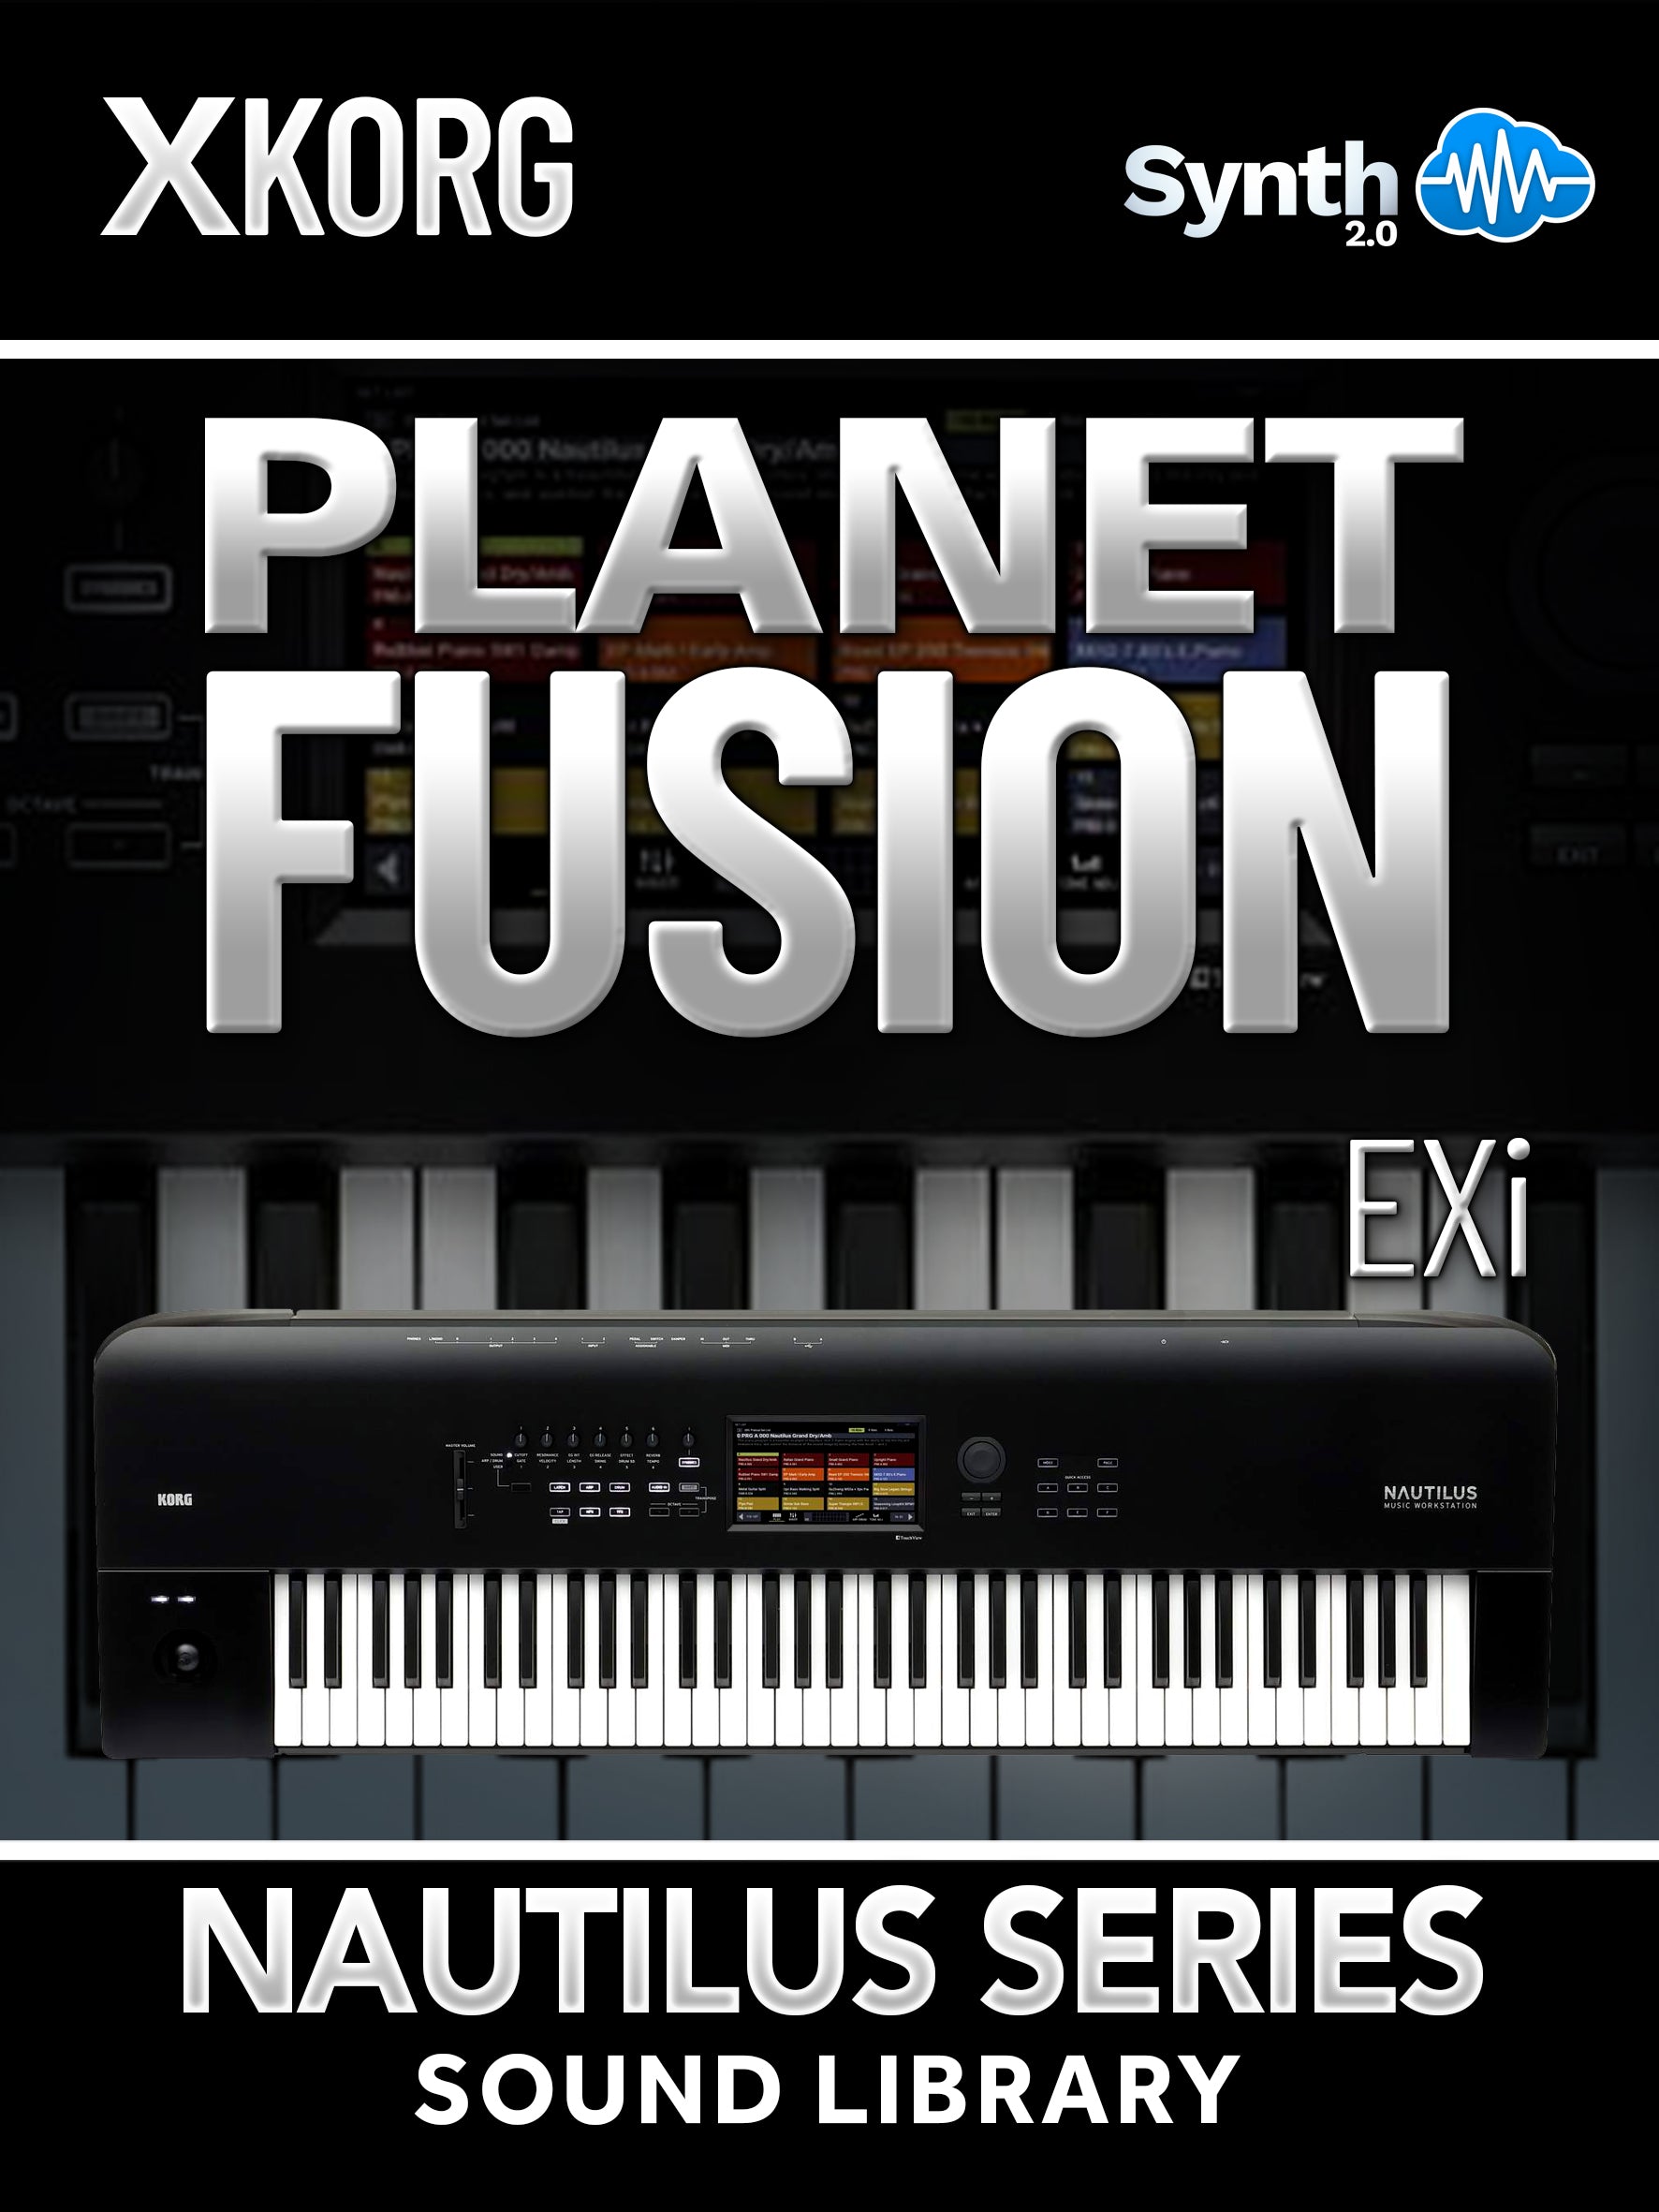 SSX002 - Planet Fusion EXi - Korg Nautilus Series ( 30 presets )